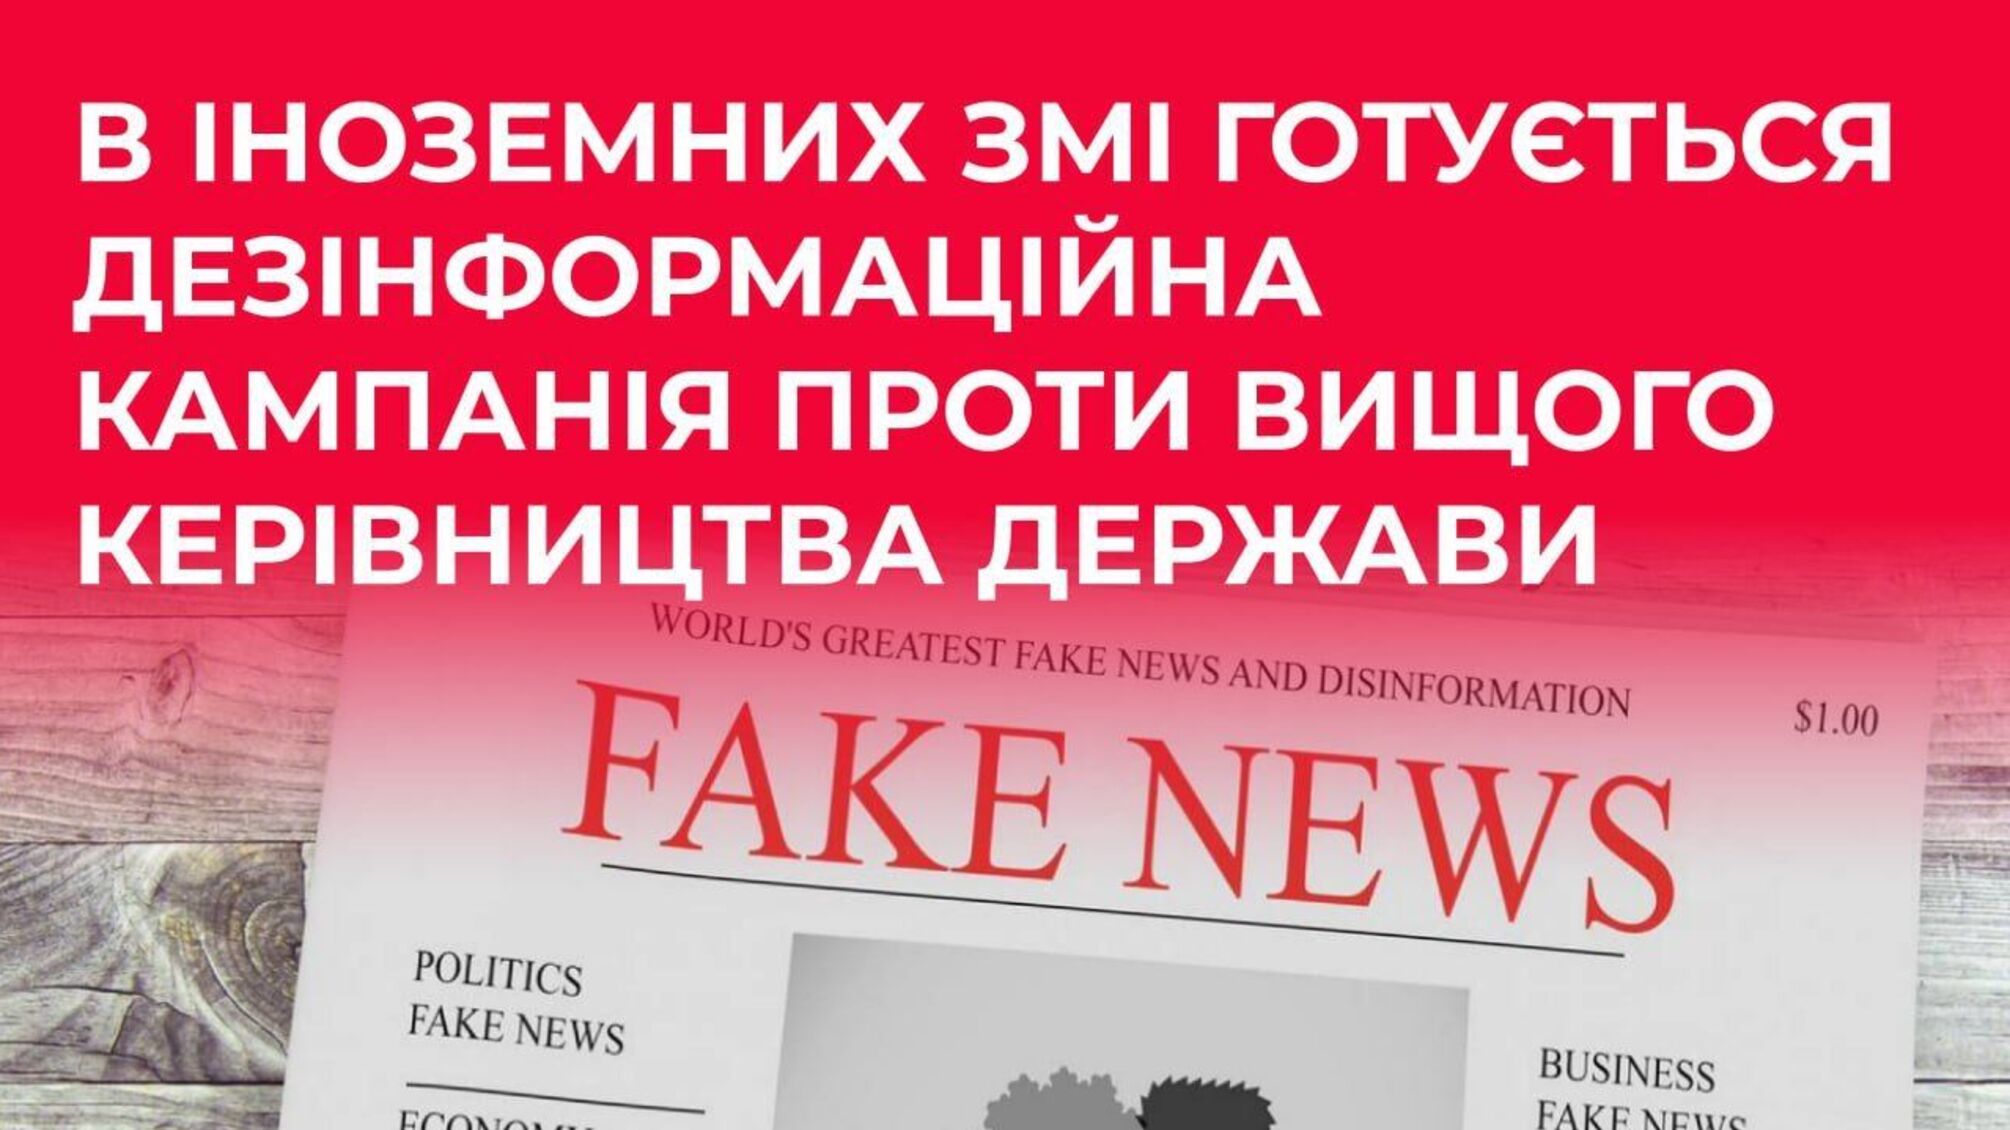 В іноземних ЗМІ планують дезінформаційну кампанію проти вищого керівництва України